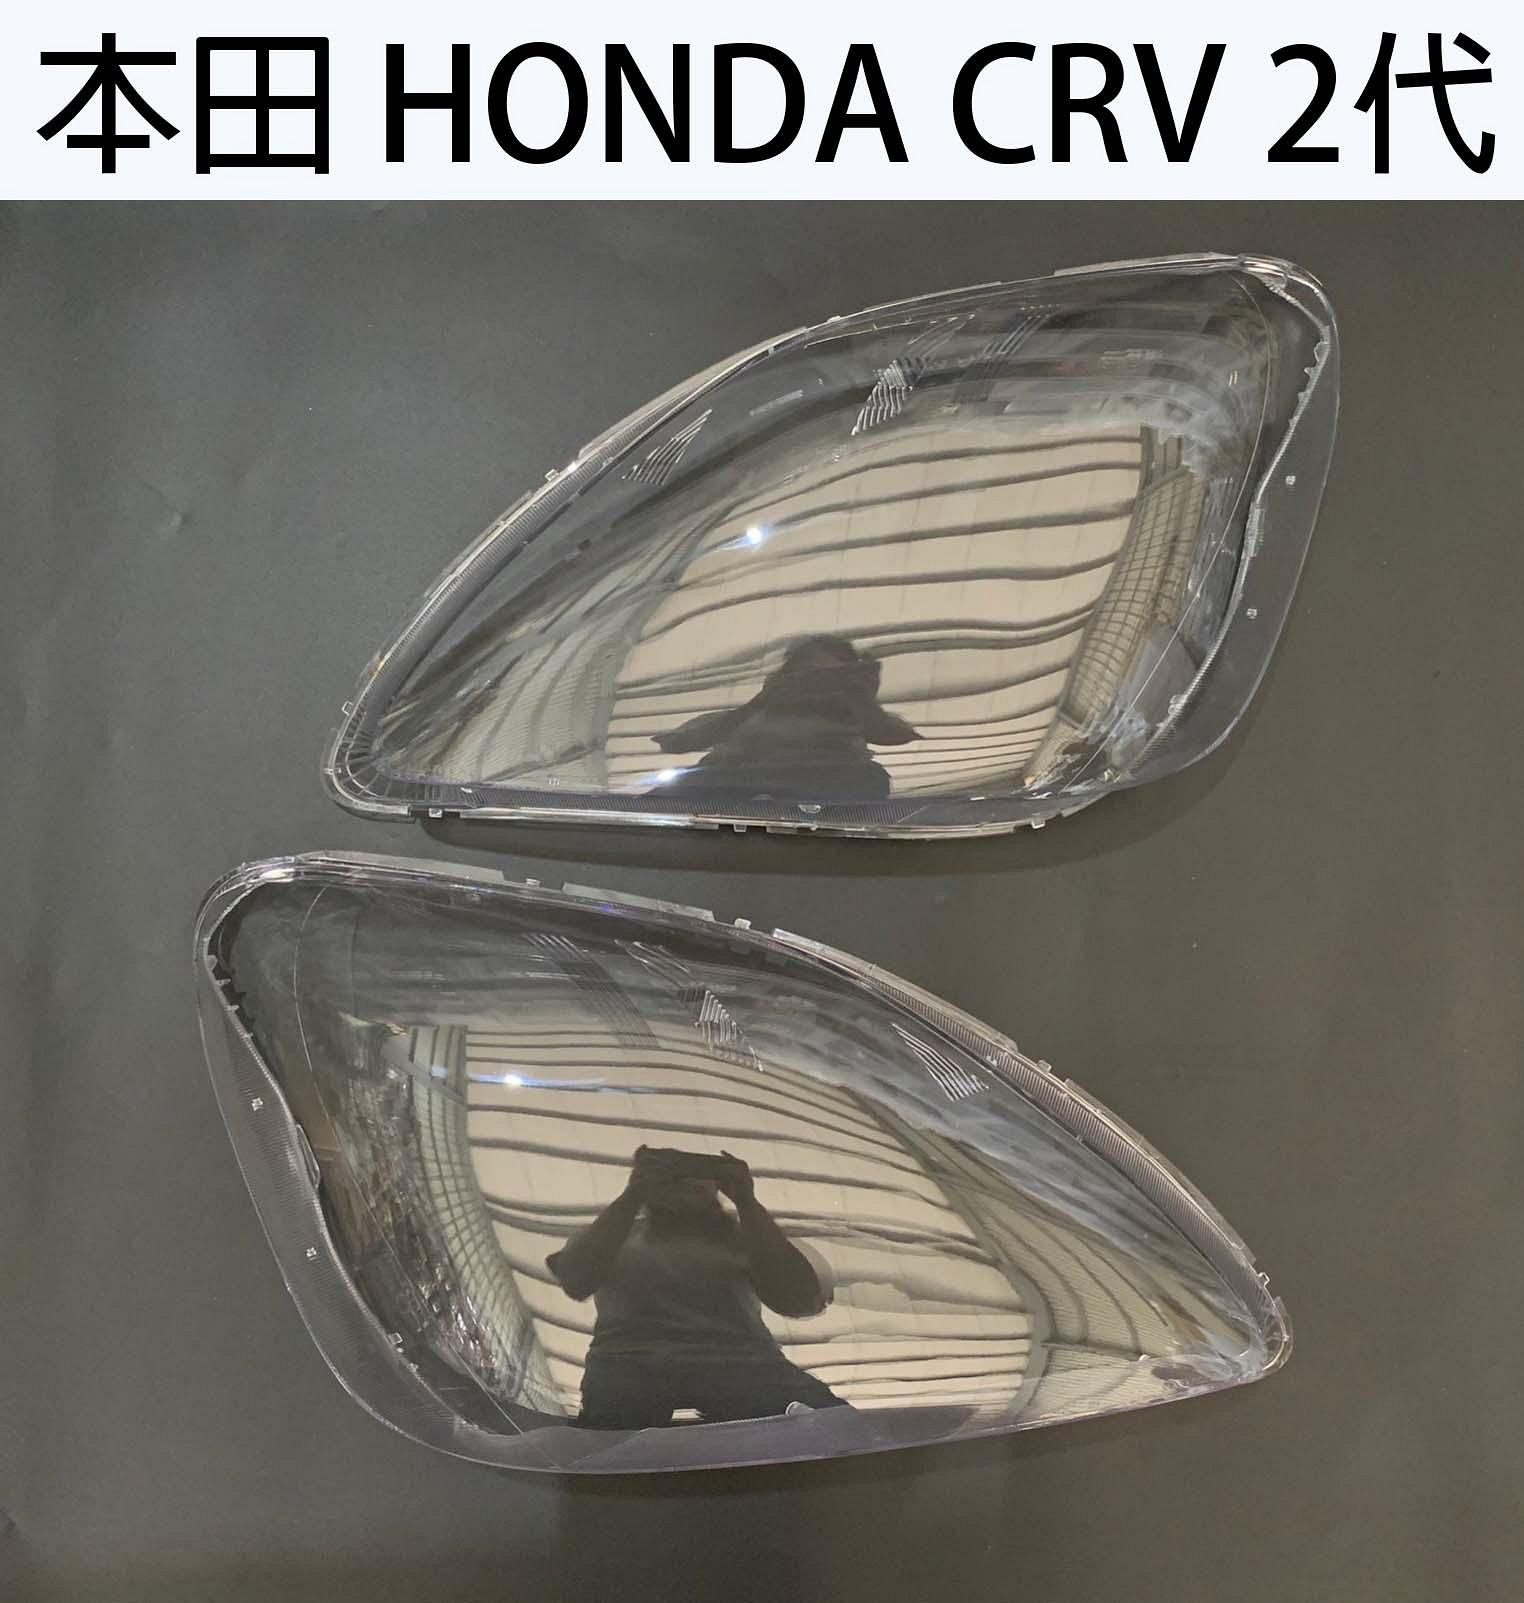 HONDA 本田汽車專用大燈燈殼 燈罩本田 HONDA CRV 2代 05-06年適用 車款皆可詢問